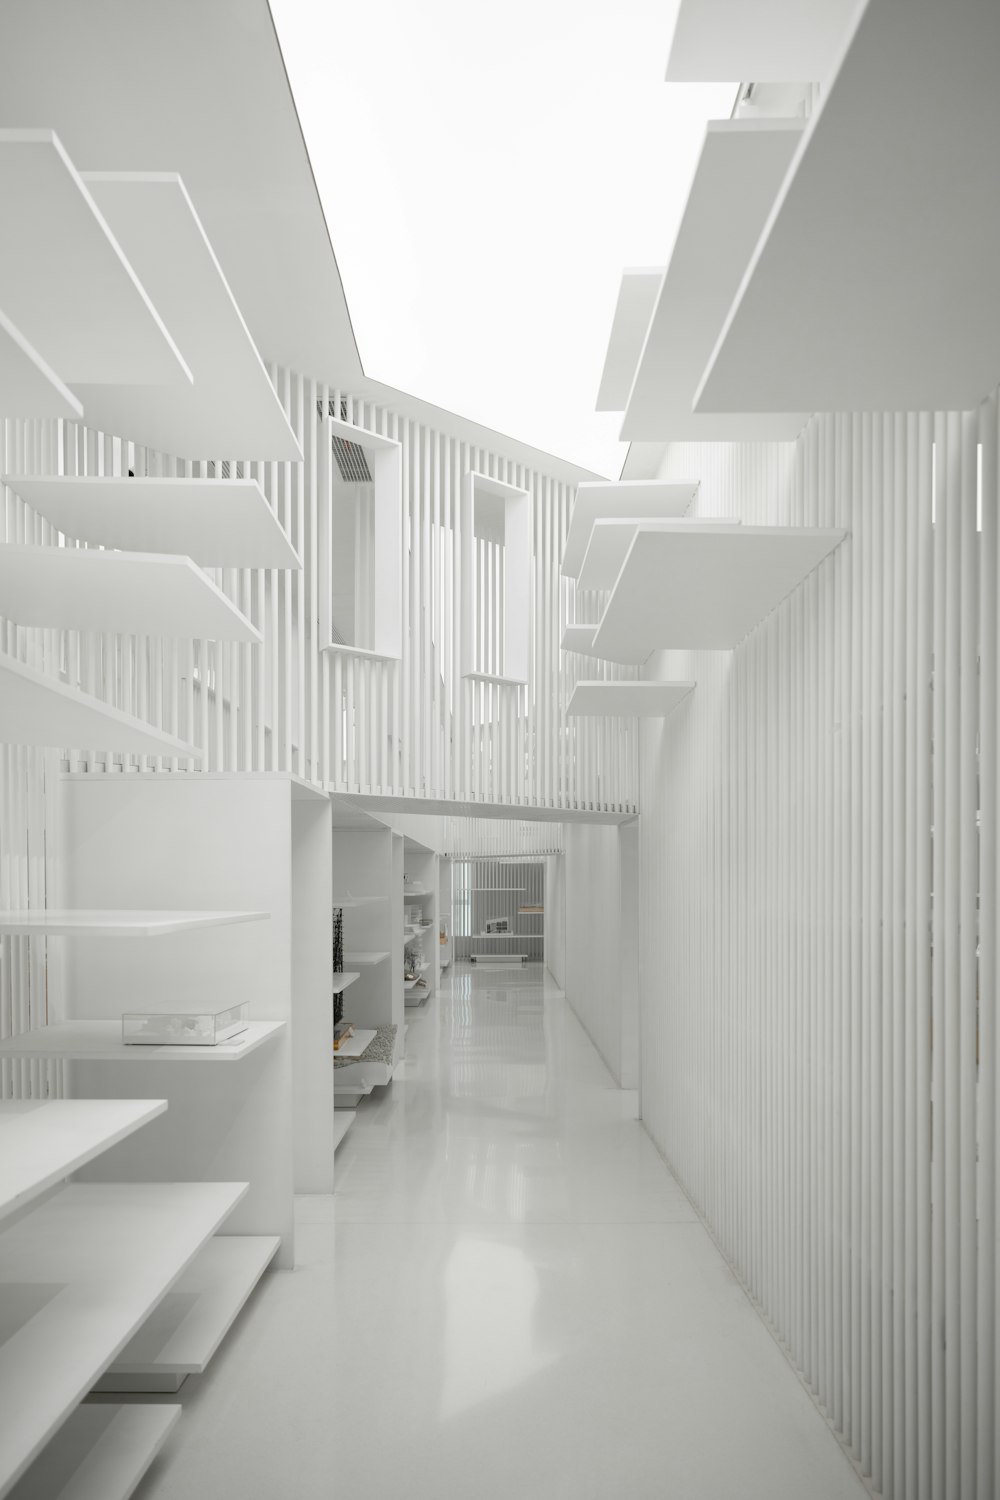 棚と階段のある長い白い廊下